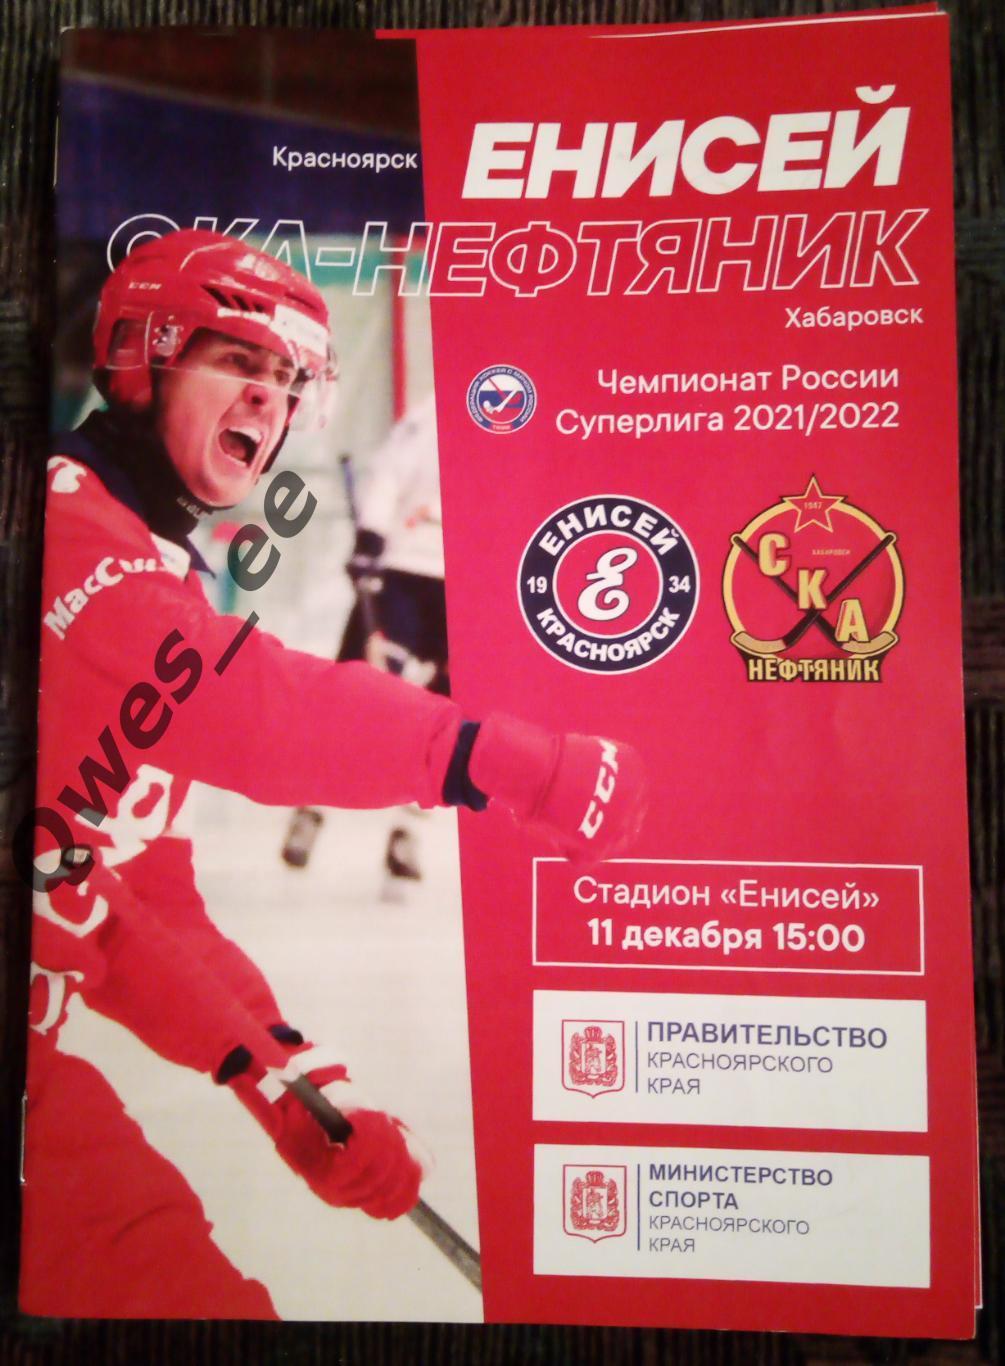 Хоккей с мячом Енисей Красноярск Ска-Нефтяник Хабаровск 11 декабря 2021